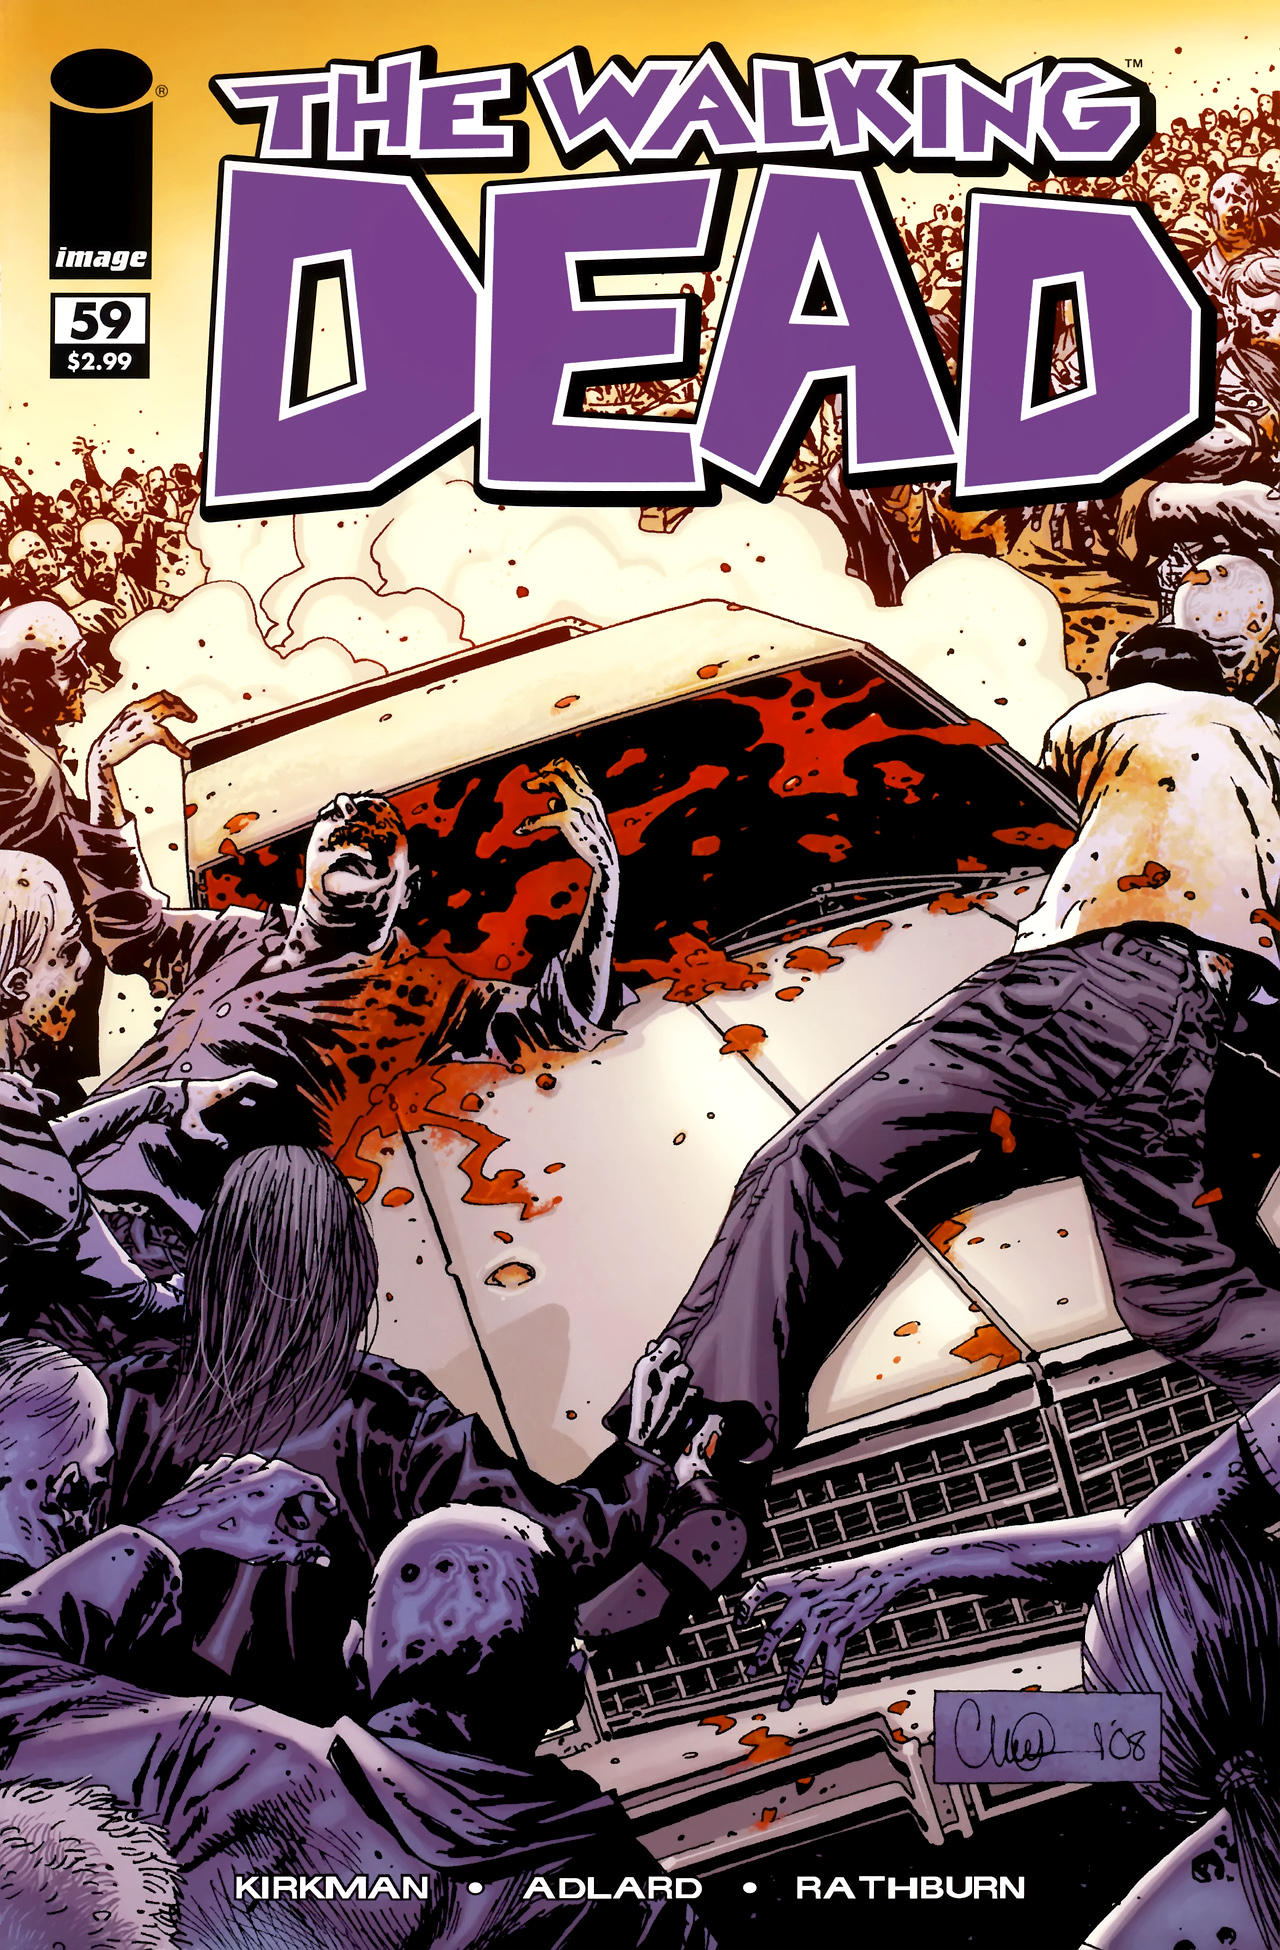 The Walking Dead Vol. 1 #59